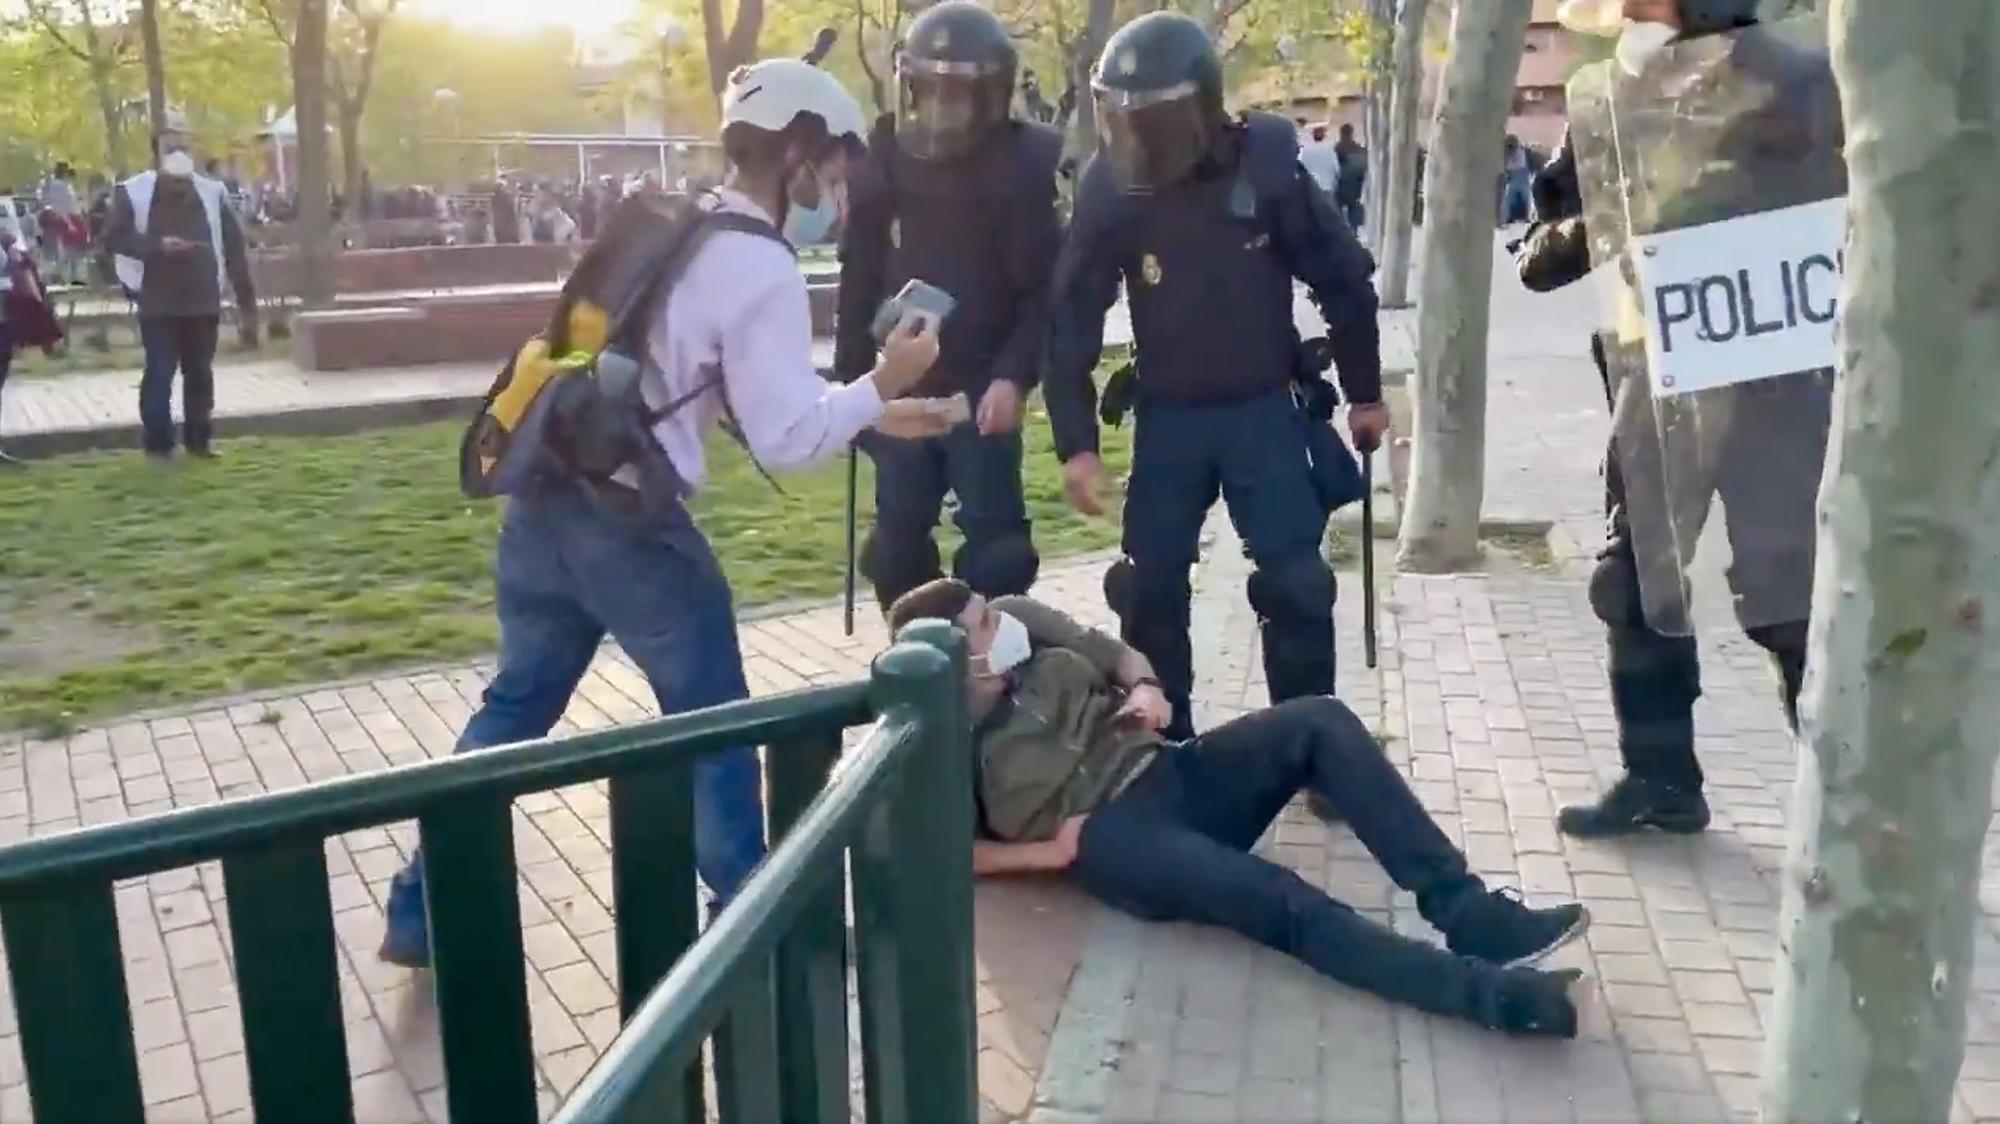 Guillermo Martinez agresion policial en Vallecas